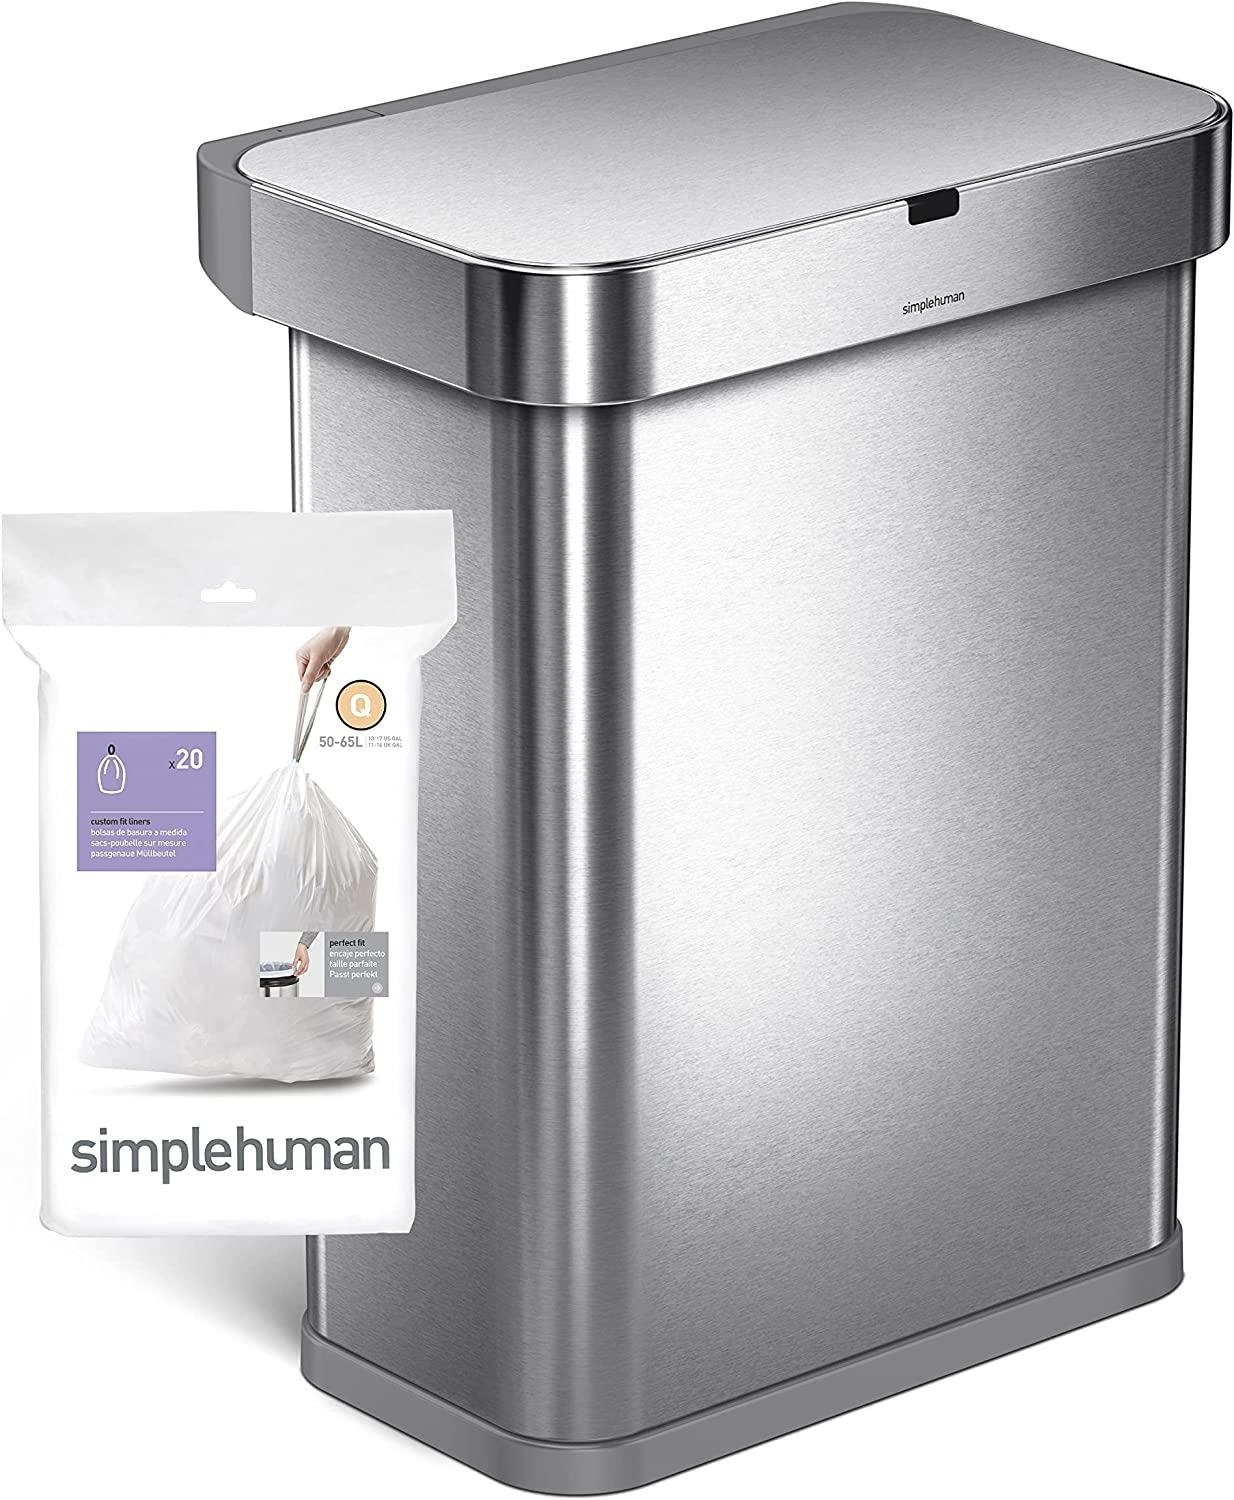  simplehuman Code Q Genuine Custom Fit Drawstring Trash Bags in  Dispenser Packs, 60 Count, 50-65 Liter / 13.2-17.2 Gallon, White : Health &  Household